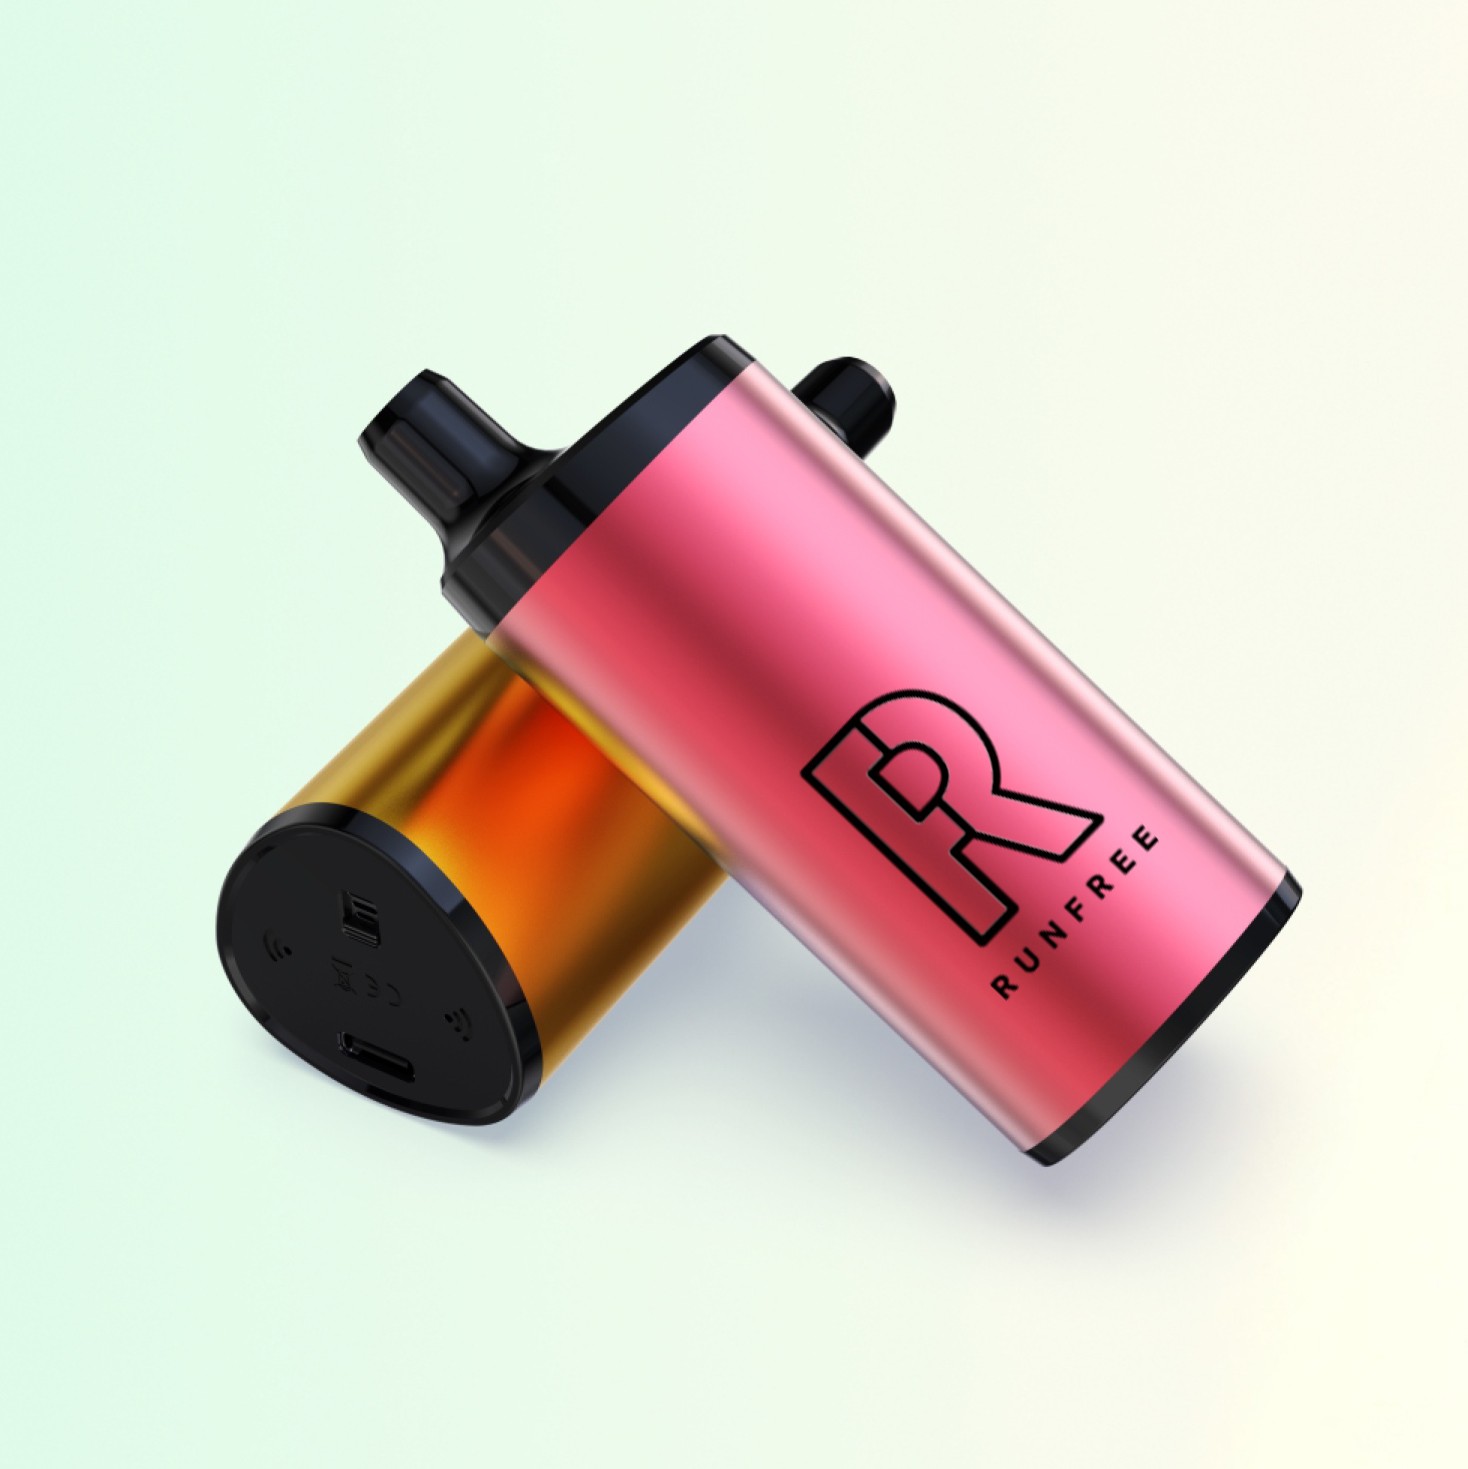 Runfree pen vaporizer brand for e cig market-1